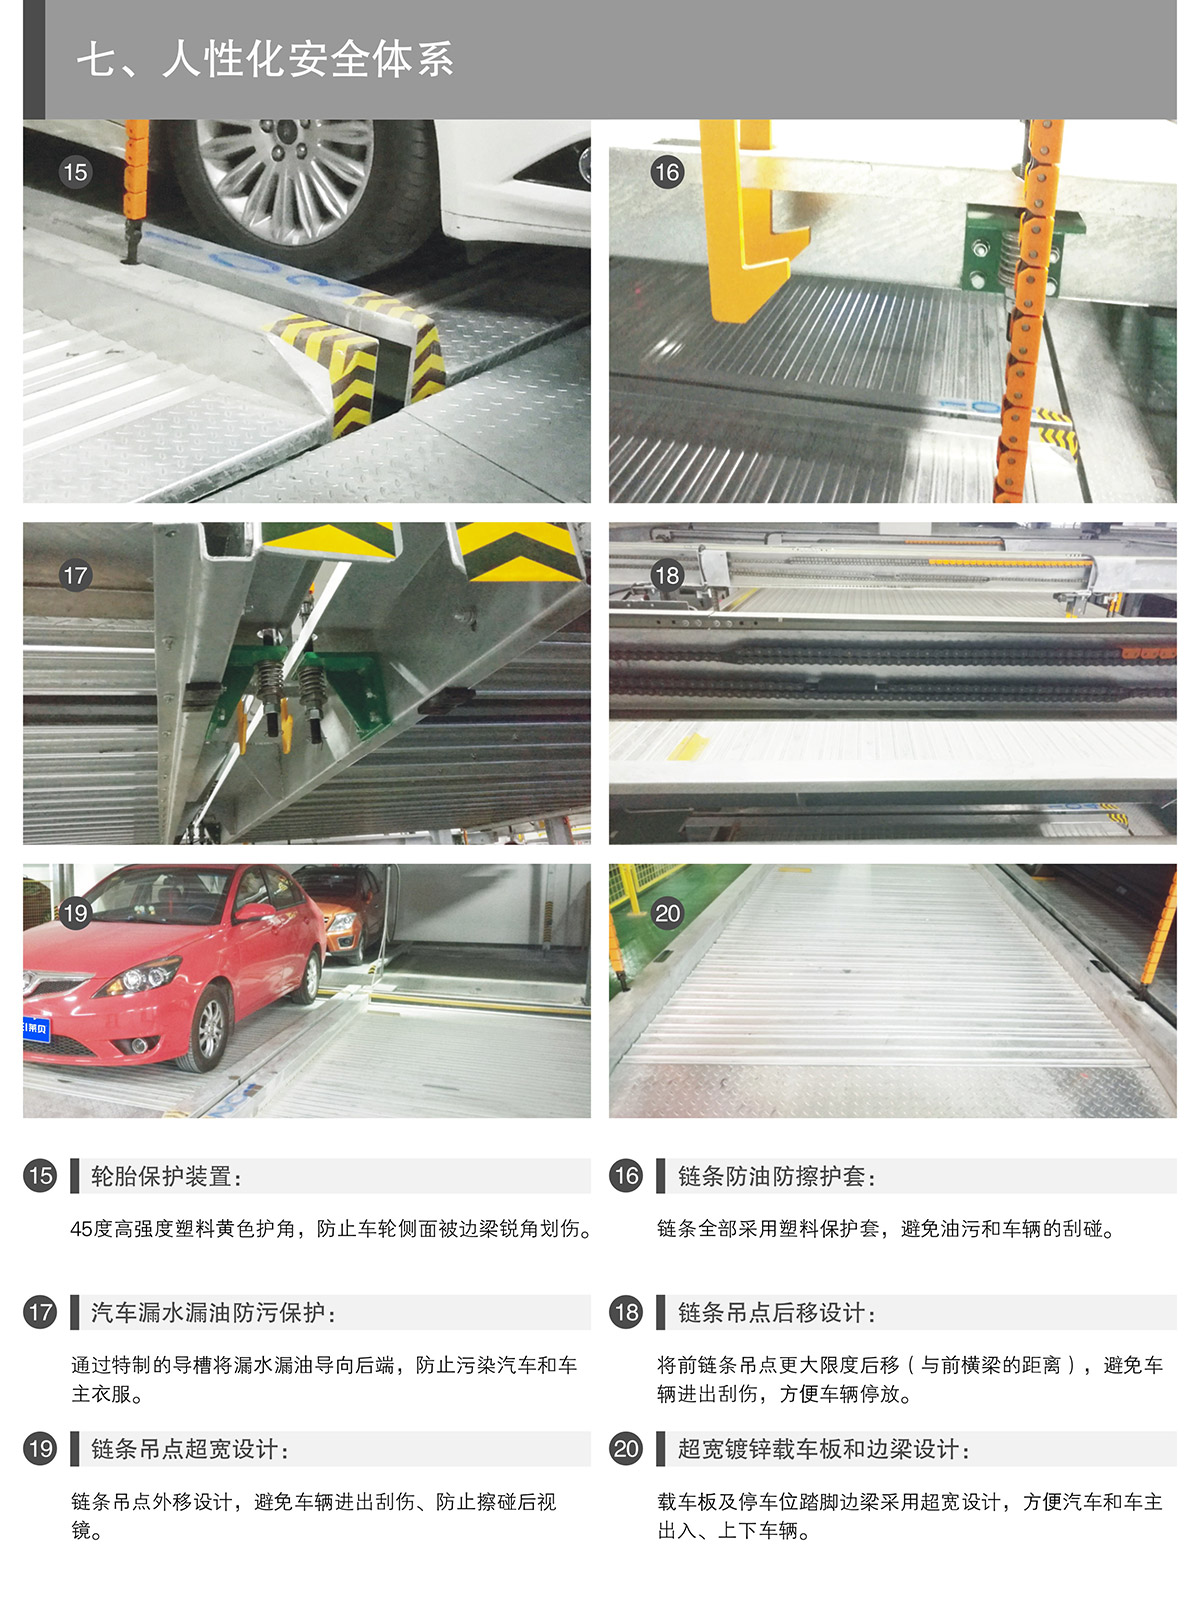 贵州PSH4-D2负二正二地坑四层升降横移类机械式立体停车设备人性化安全体系.jpg